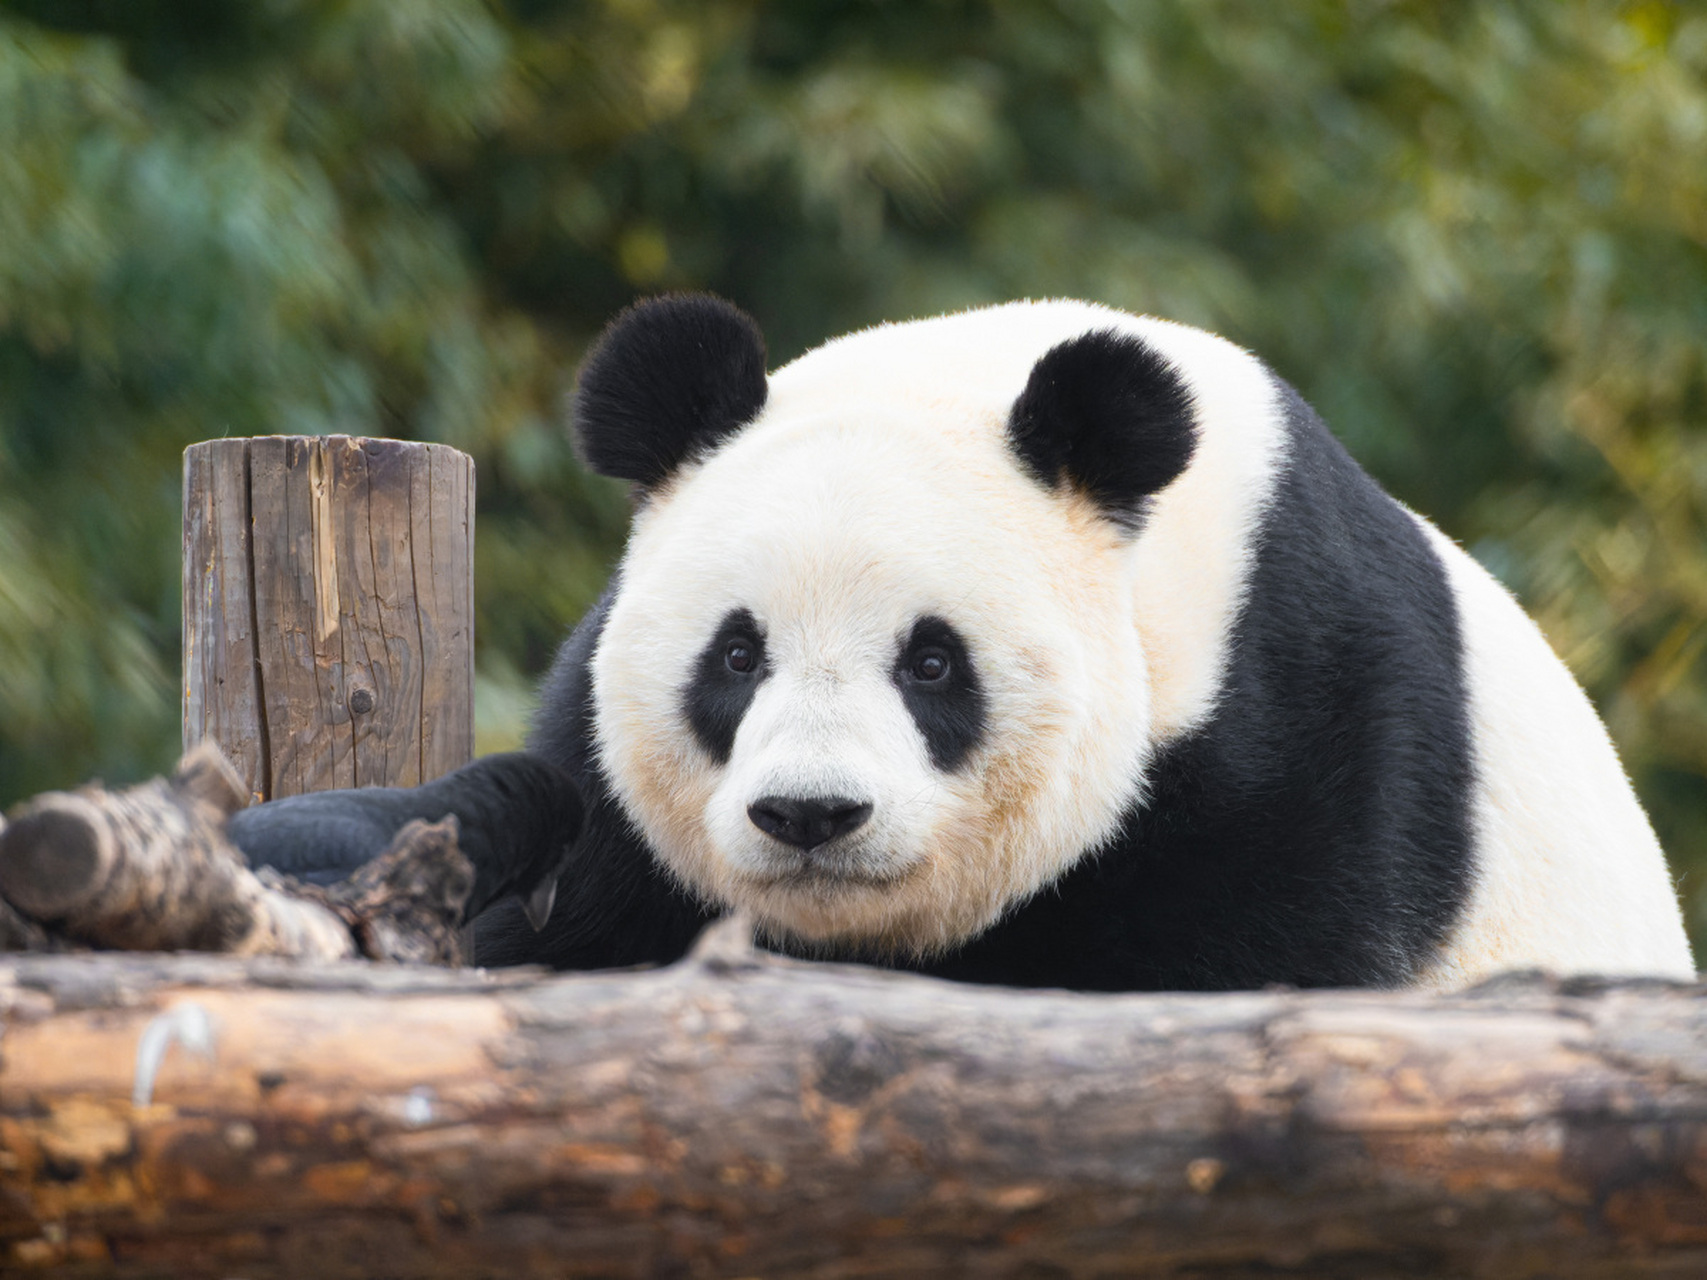 泰州动物园新招:狮犬扮熊猫,引发热议!是创新求人气还是误导公众?